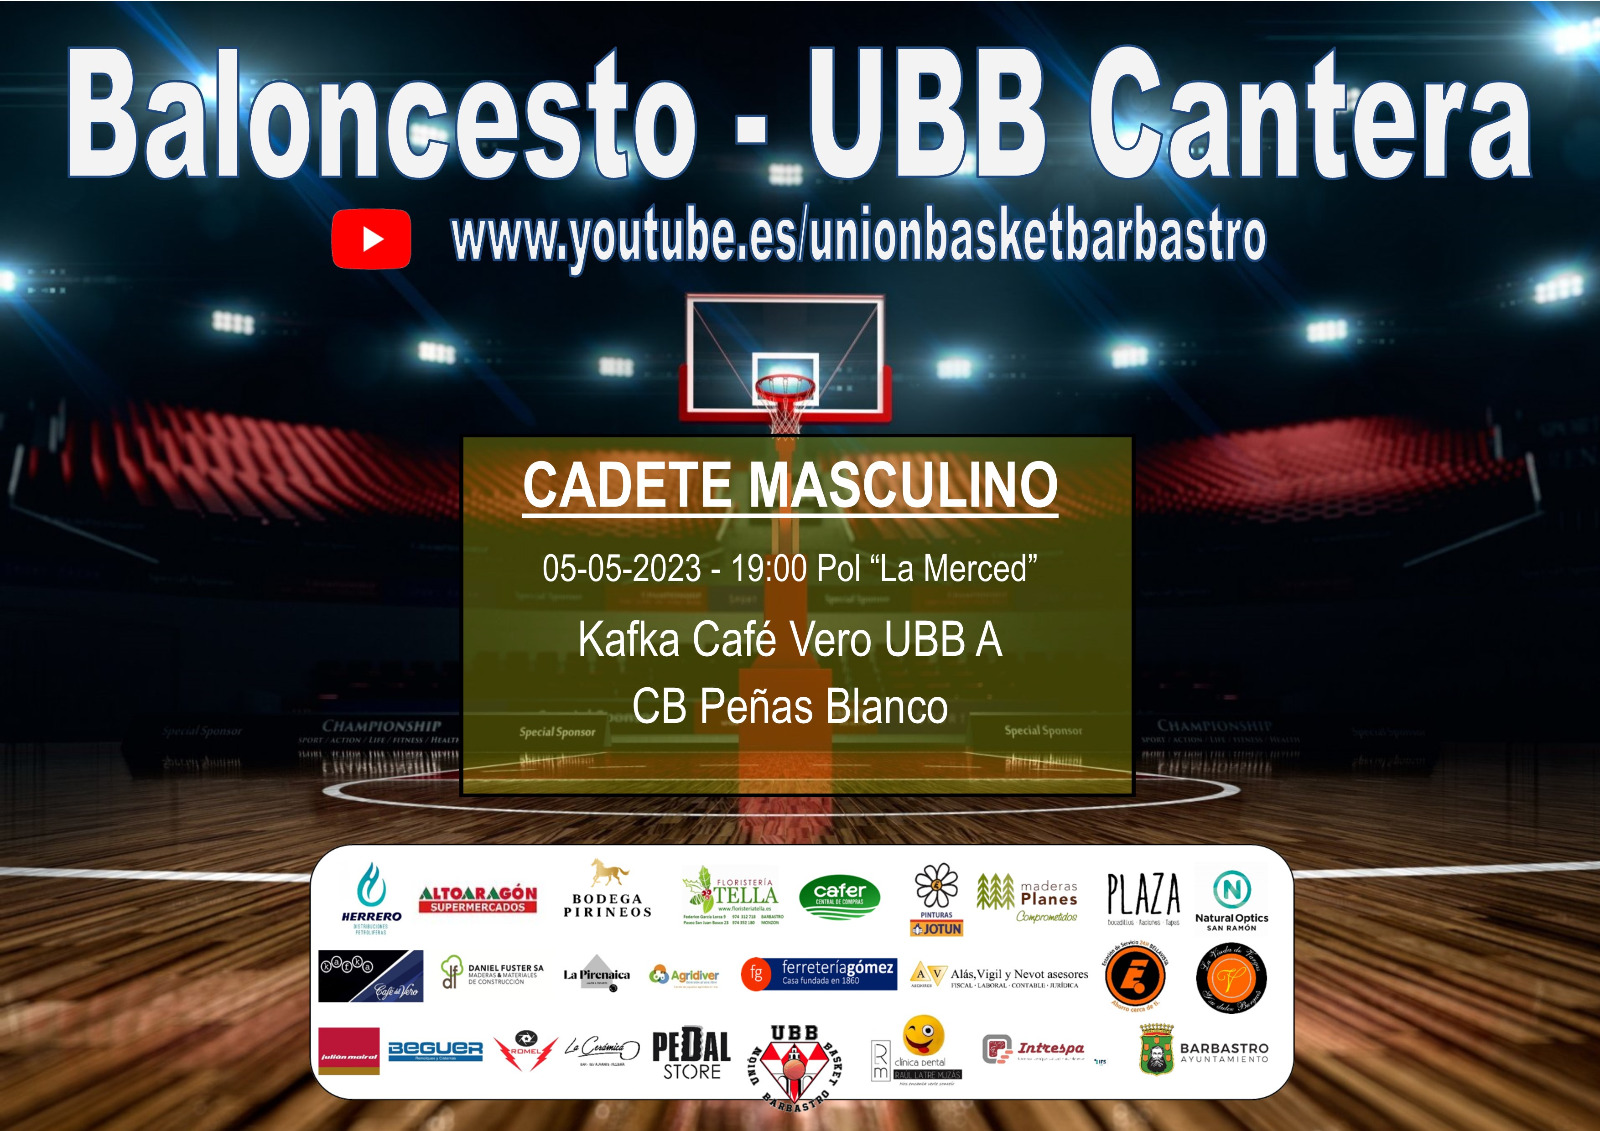 UBB Cantera 06 05